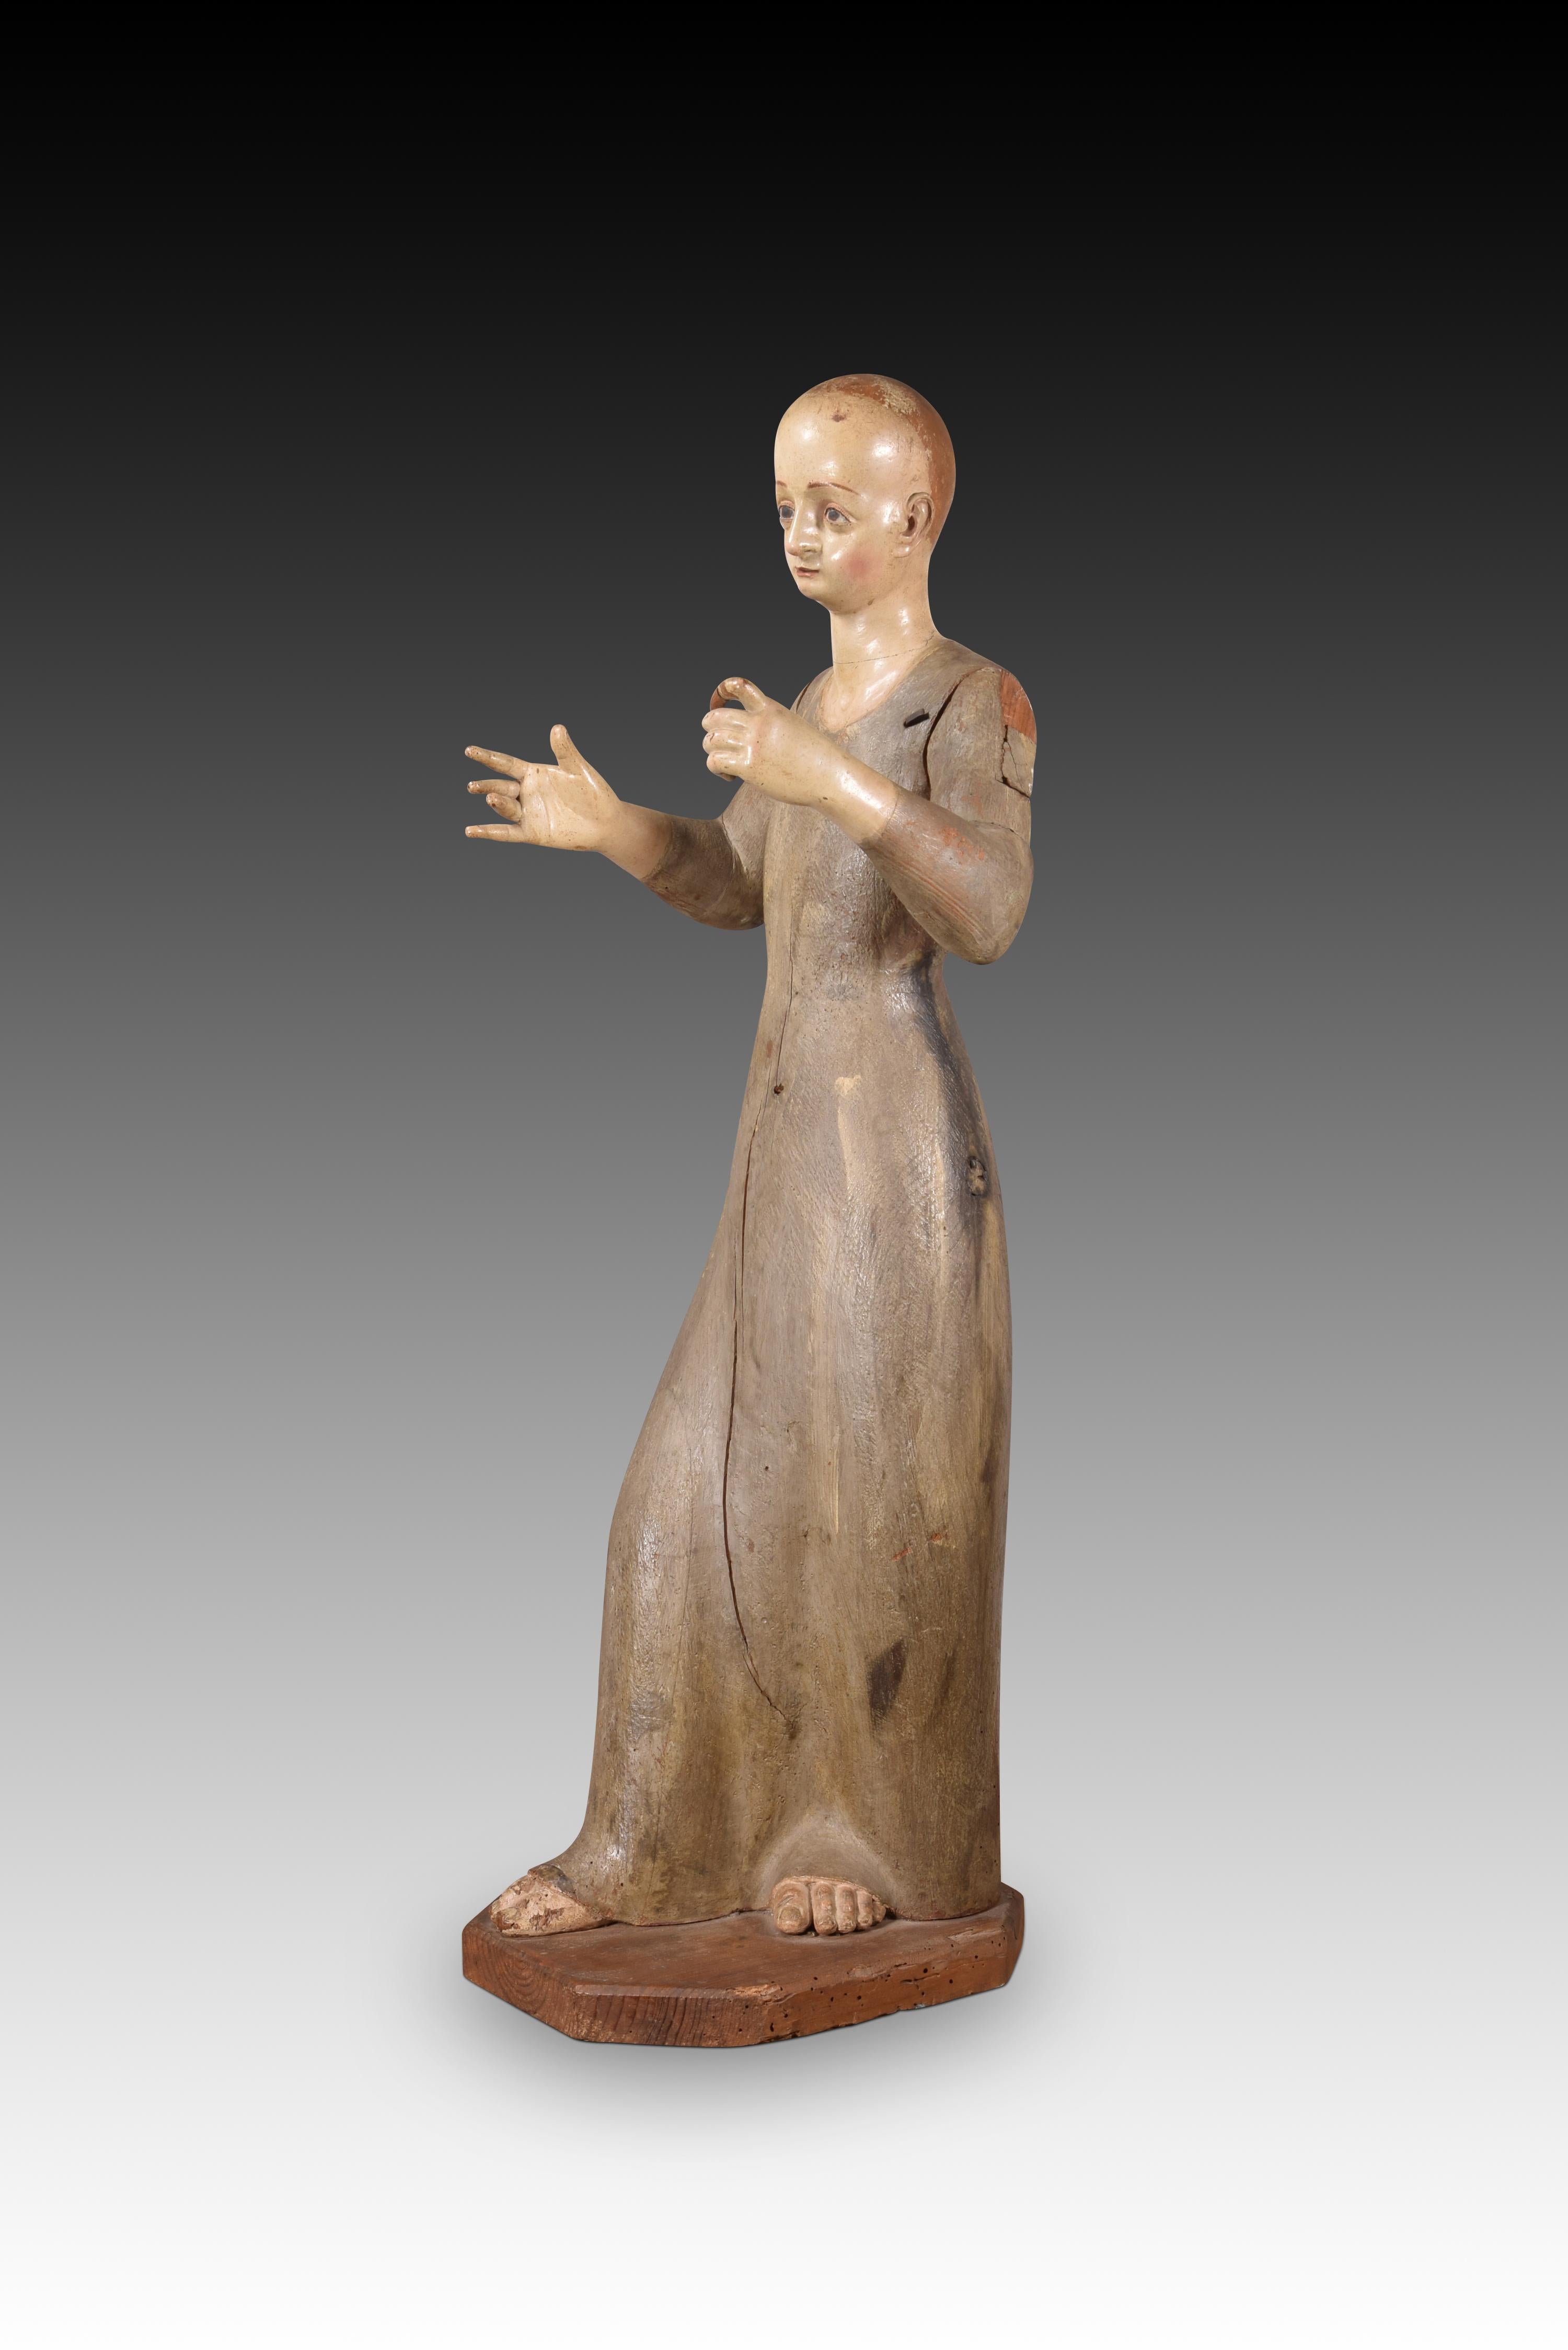 Saint oder Jungfrau zum Kleidern. Holz, Metall. Spanische Schule, 17. Jahrhundert.
 Es hat Fehler. 
Die weibliche Figur steht (mit dem rechten Bein nach vorne) auf einem kleinen polygonalen Sockel. Die Füße (die durch das 